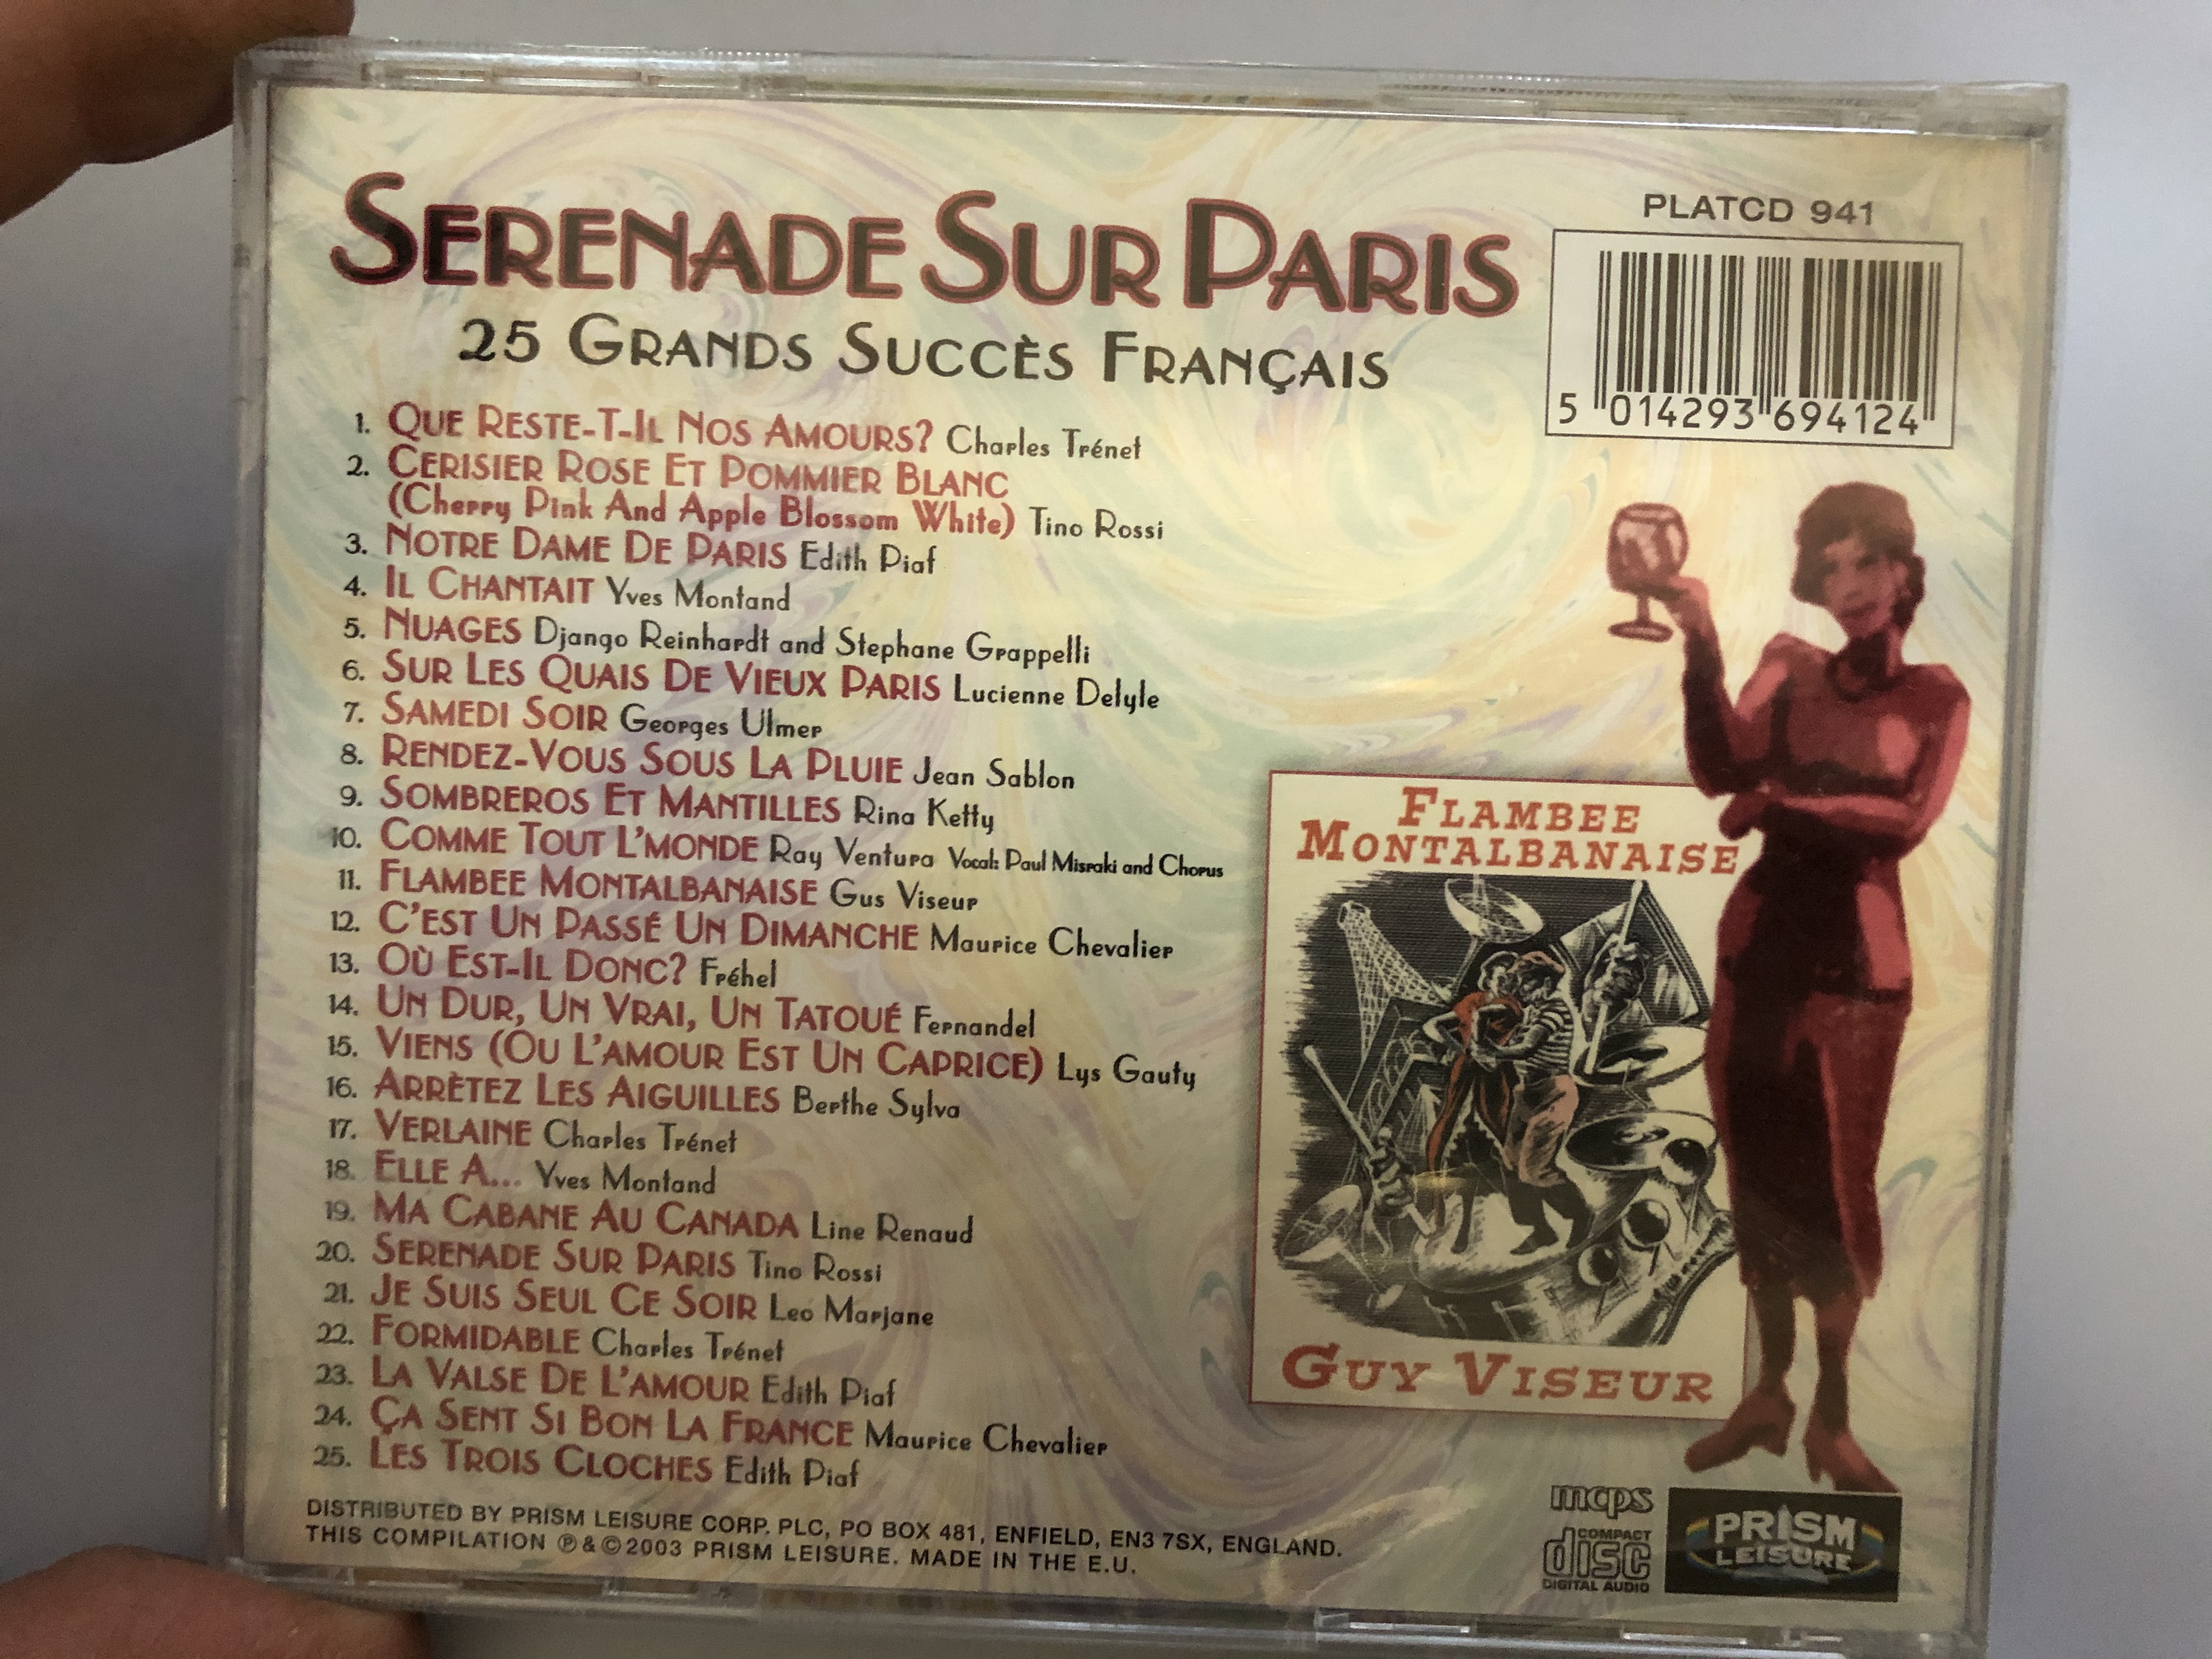 serenade-sur-paris-25-grands-succes-francais-prism-leisure-audio-cd-2003-platcd-941-2-.jpg